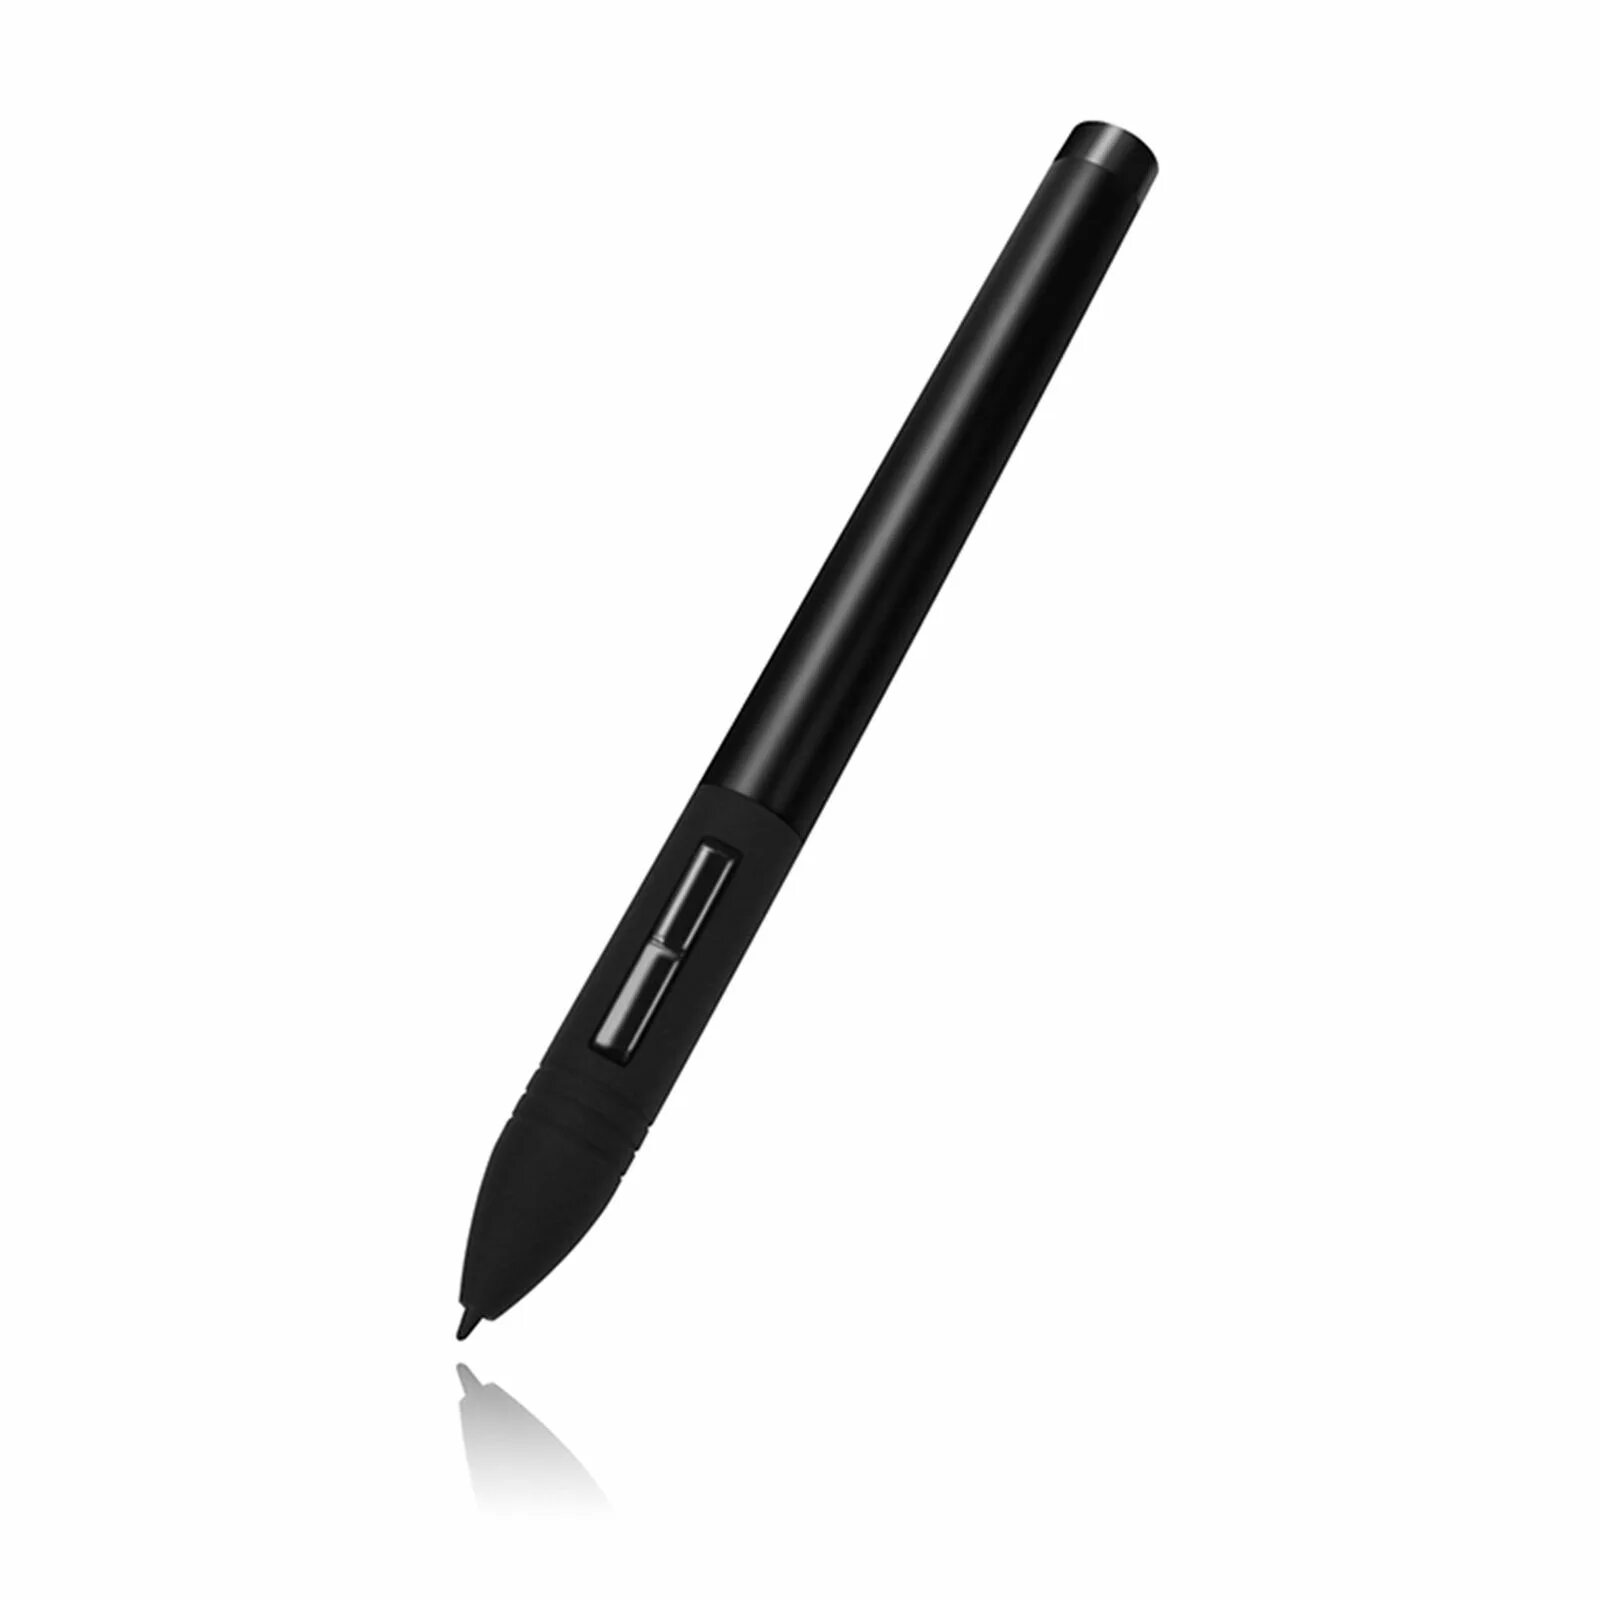 Xp pen перо. Стилус для графического планшета Huion. Стилус Activ Pencil для iphone / IPAD White 99696. Стилус p150 Huion. Графический планшет Huion 580.